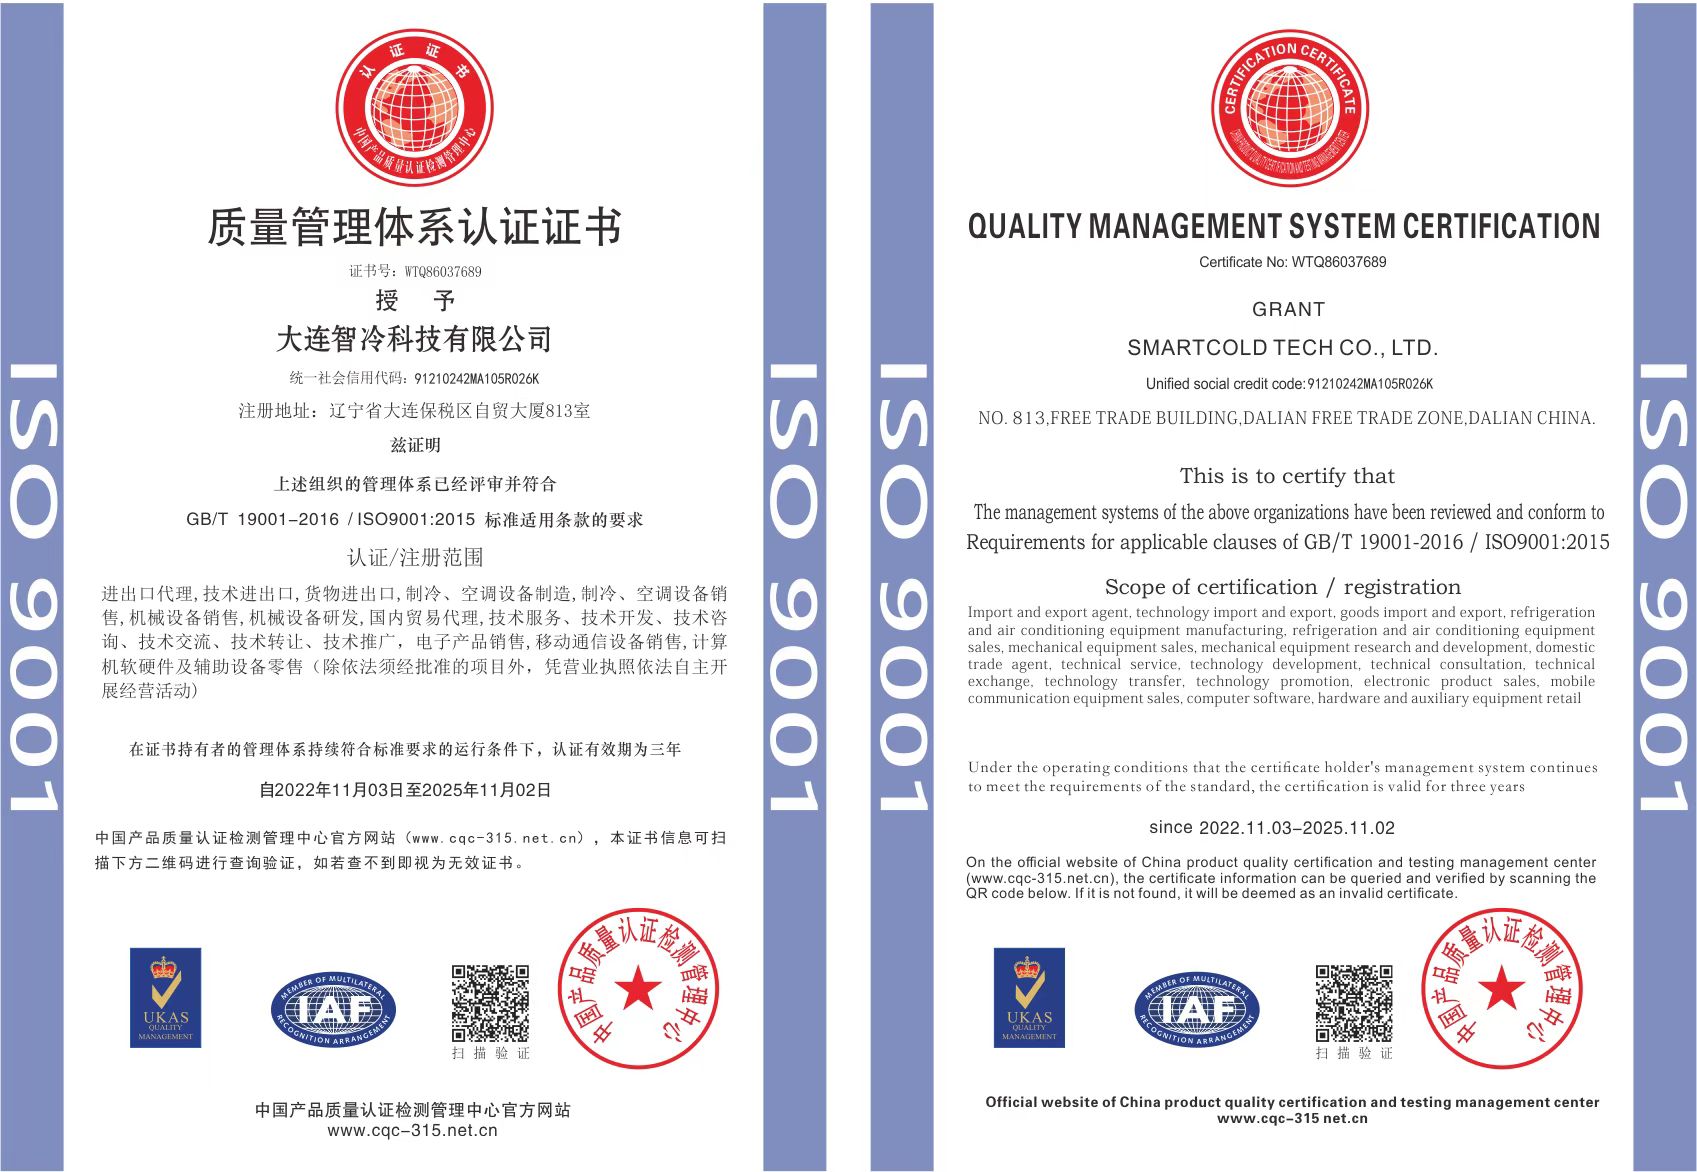 国际标准化组织 9001